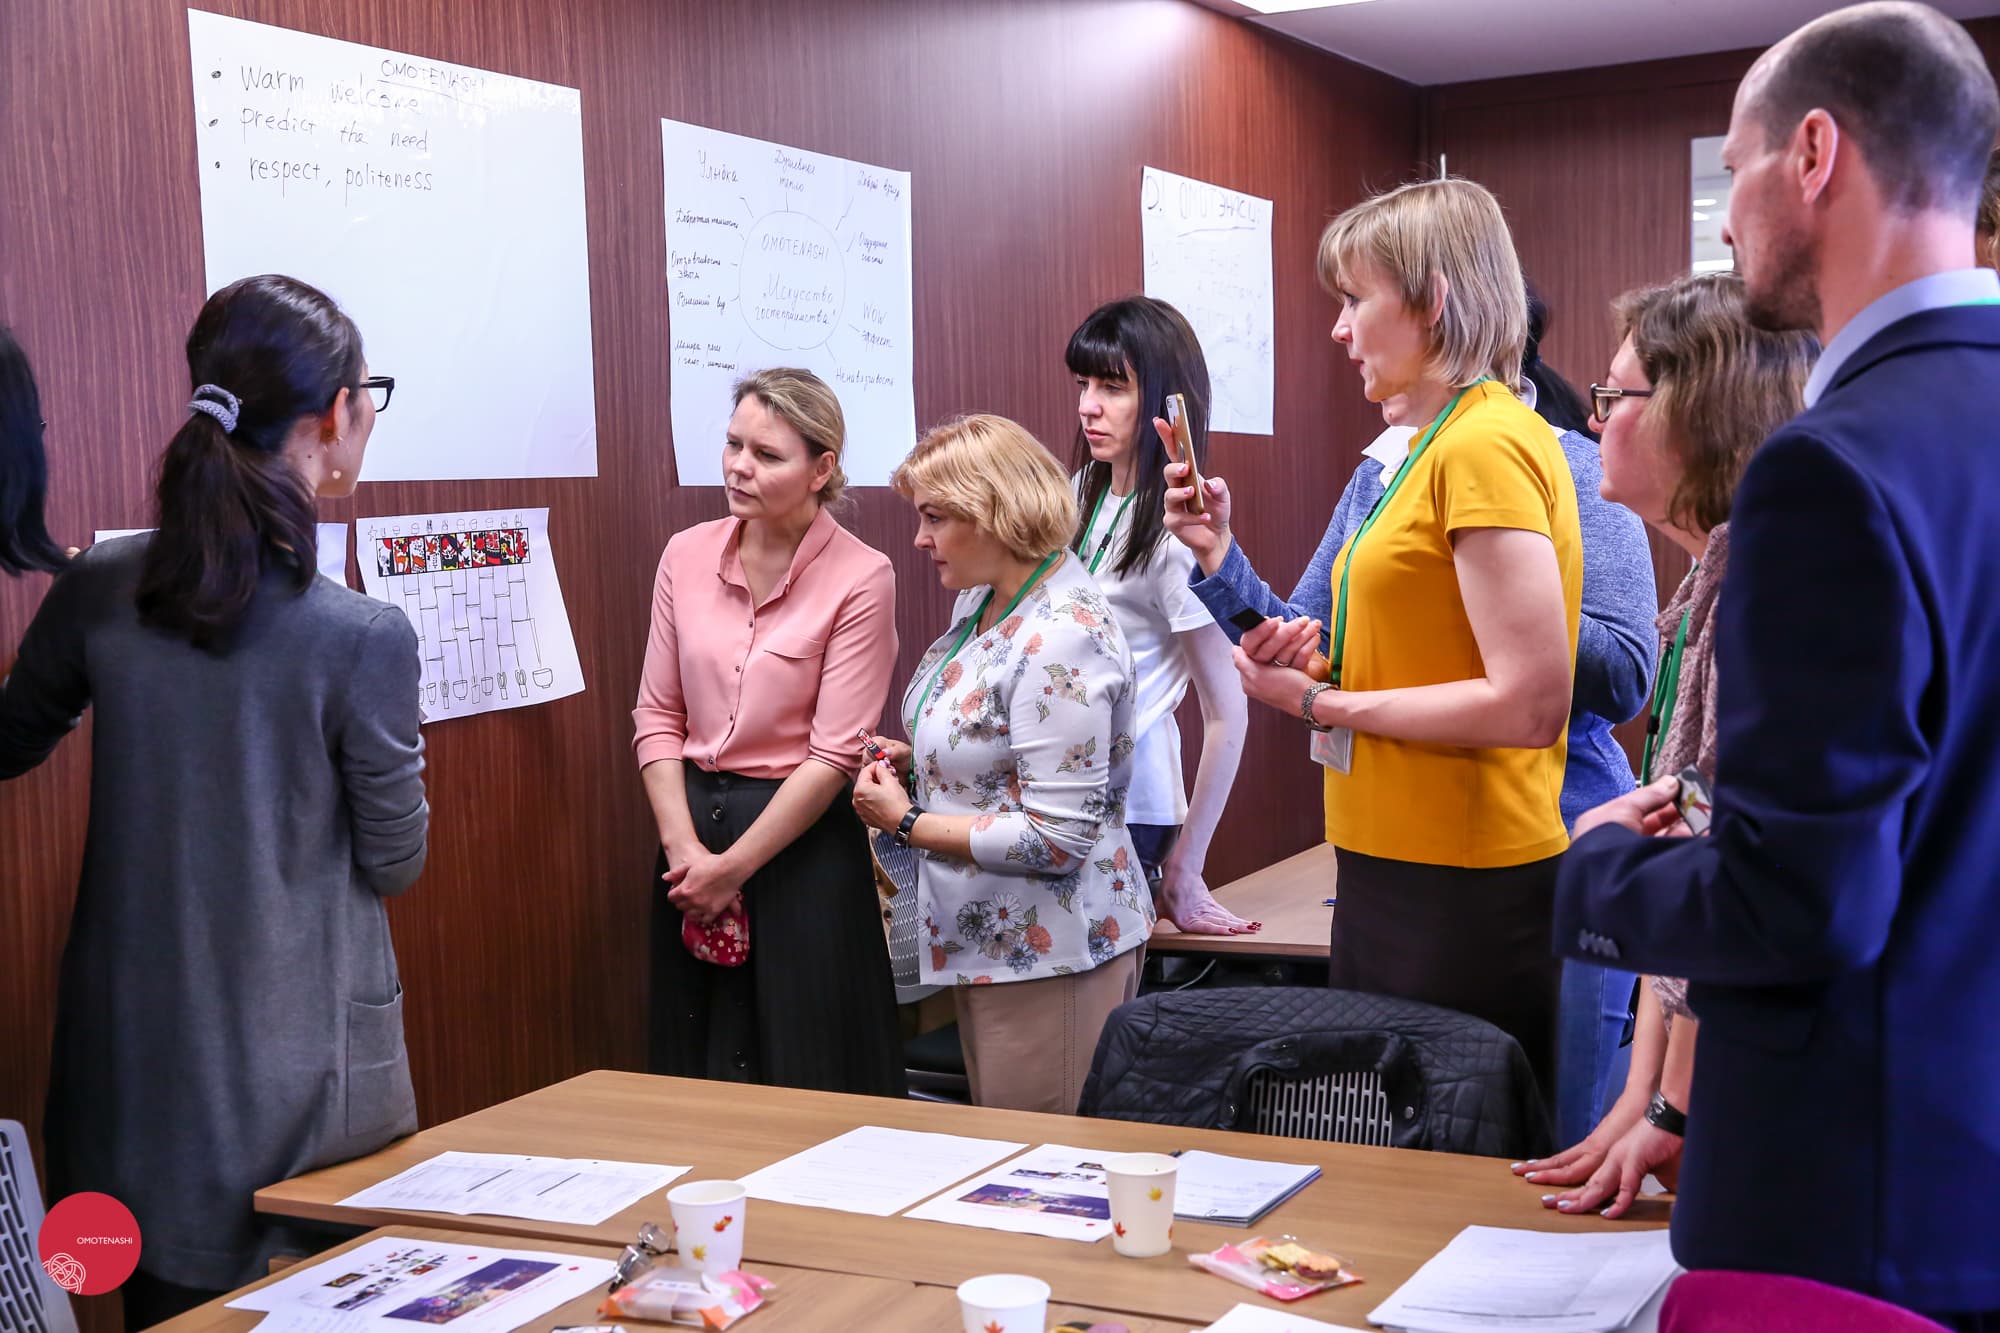 外務省 日本センター事業 日露経営人材養成、ロシア大統領プログラム「おもてなし研修」